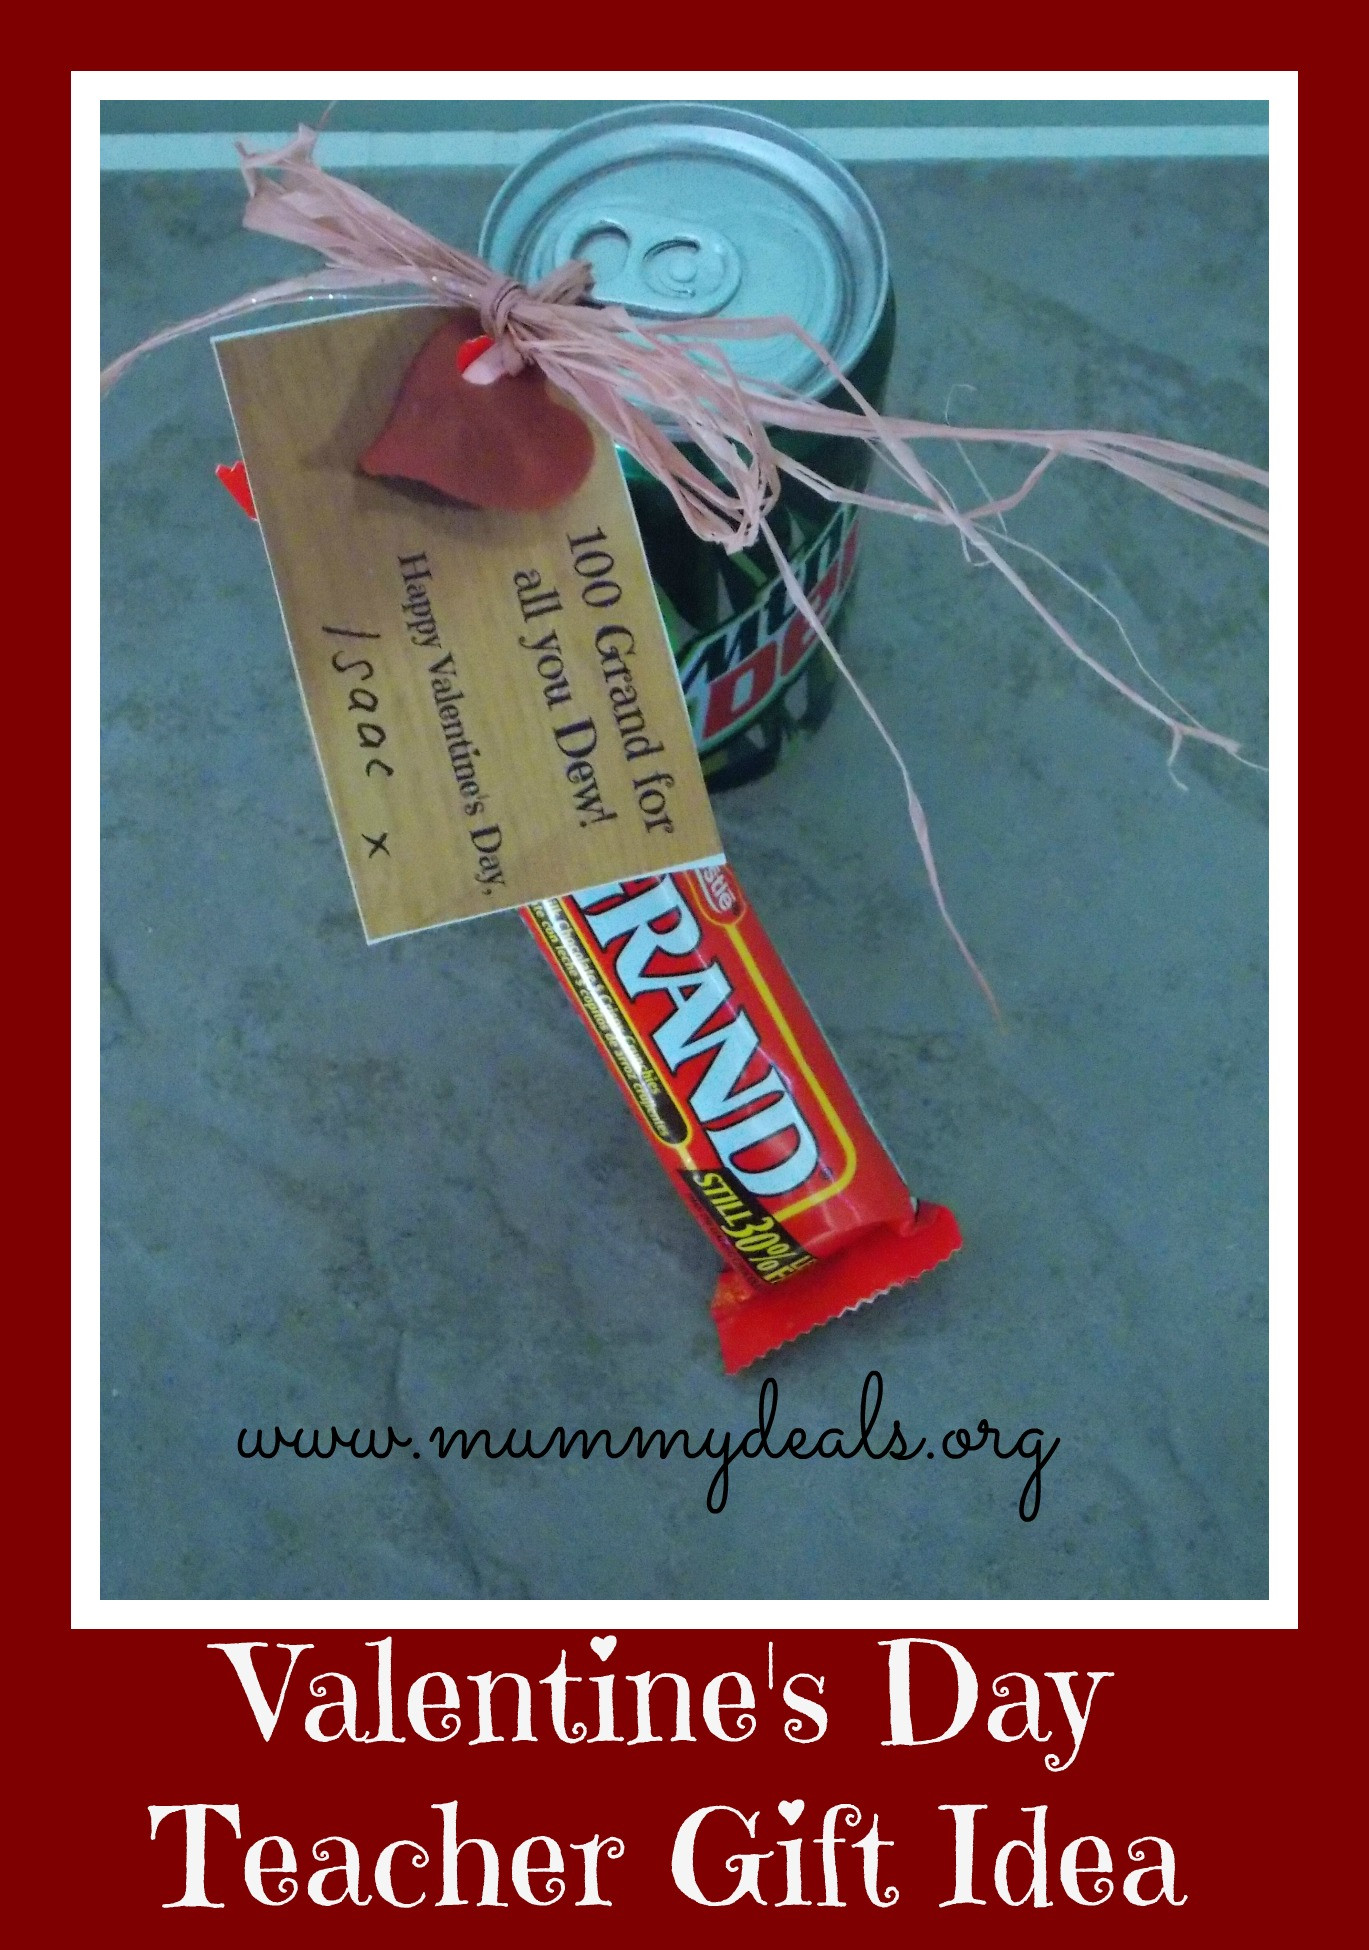 Valentines Day Gift For Teacher
 6 Valentine s Day Teacher Gift Ideas Mummy Deals